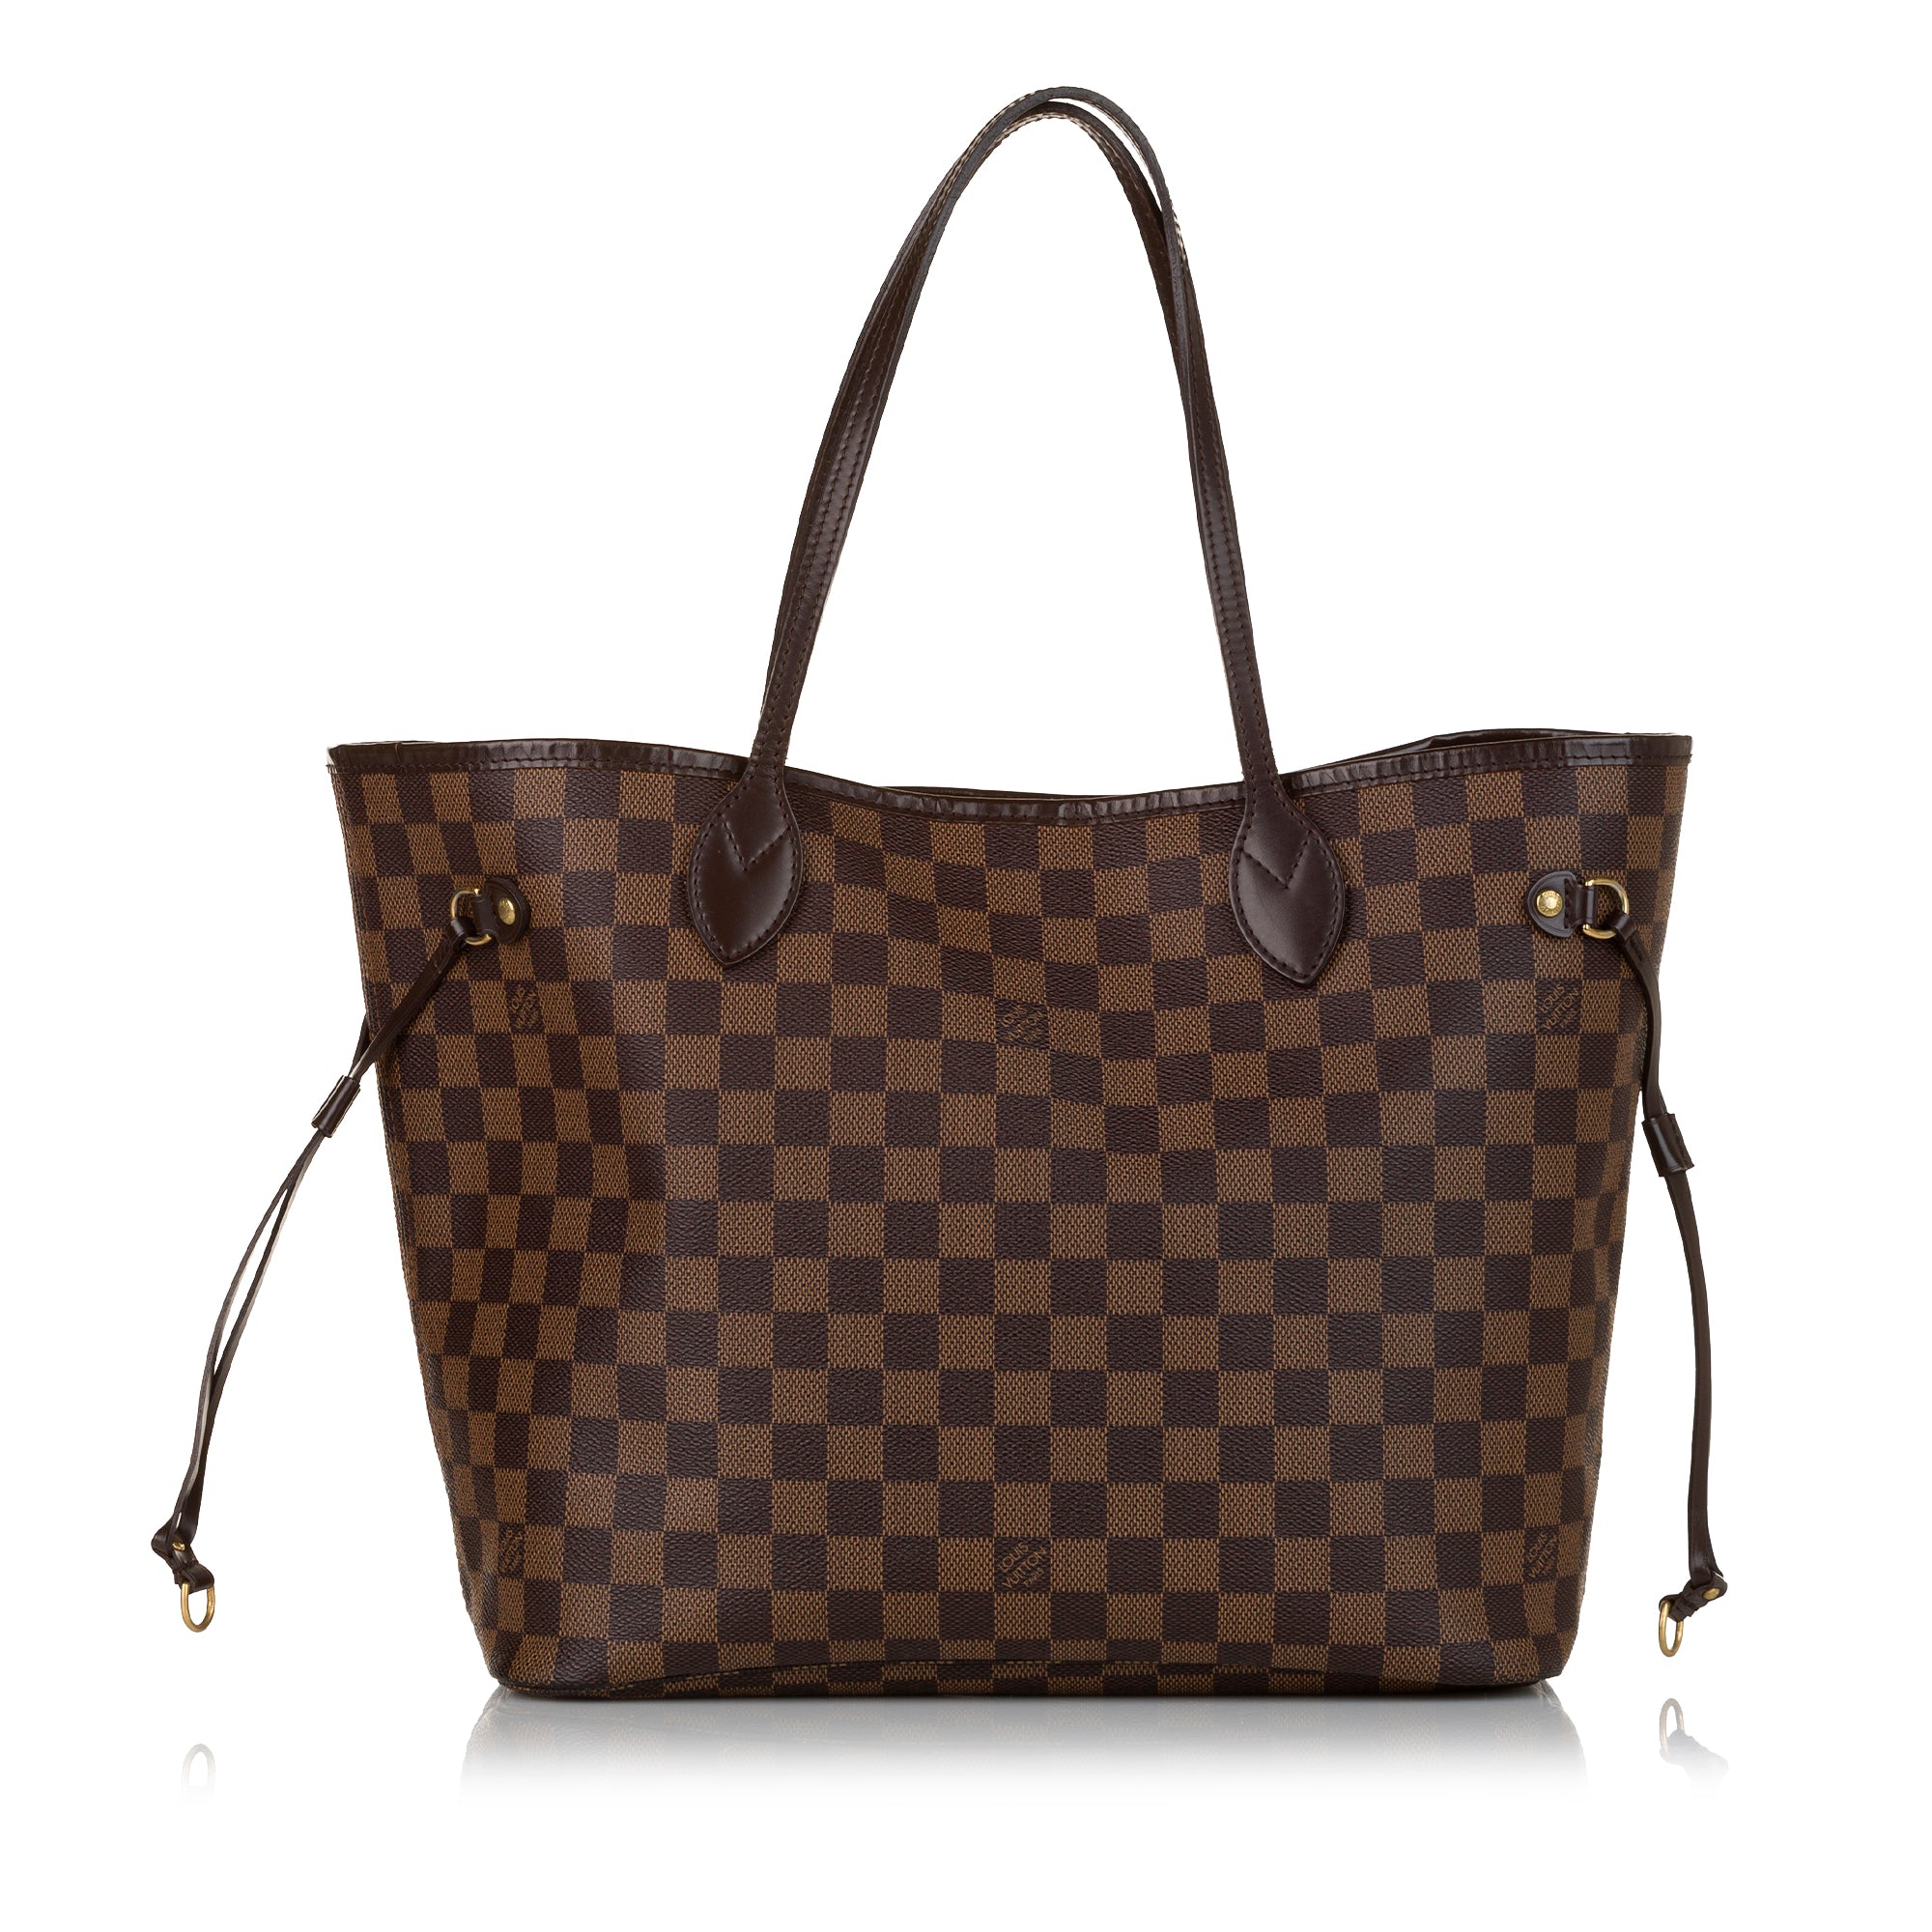 Louis Vuitton Damier Ebene Canvas Top Handle Bag on SALE